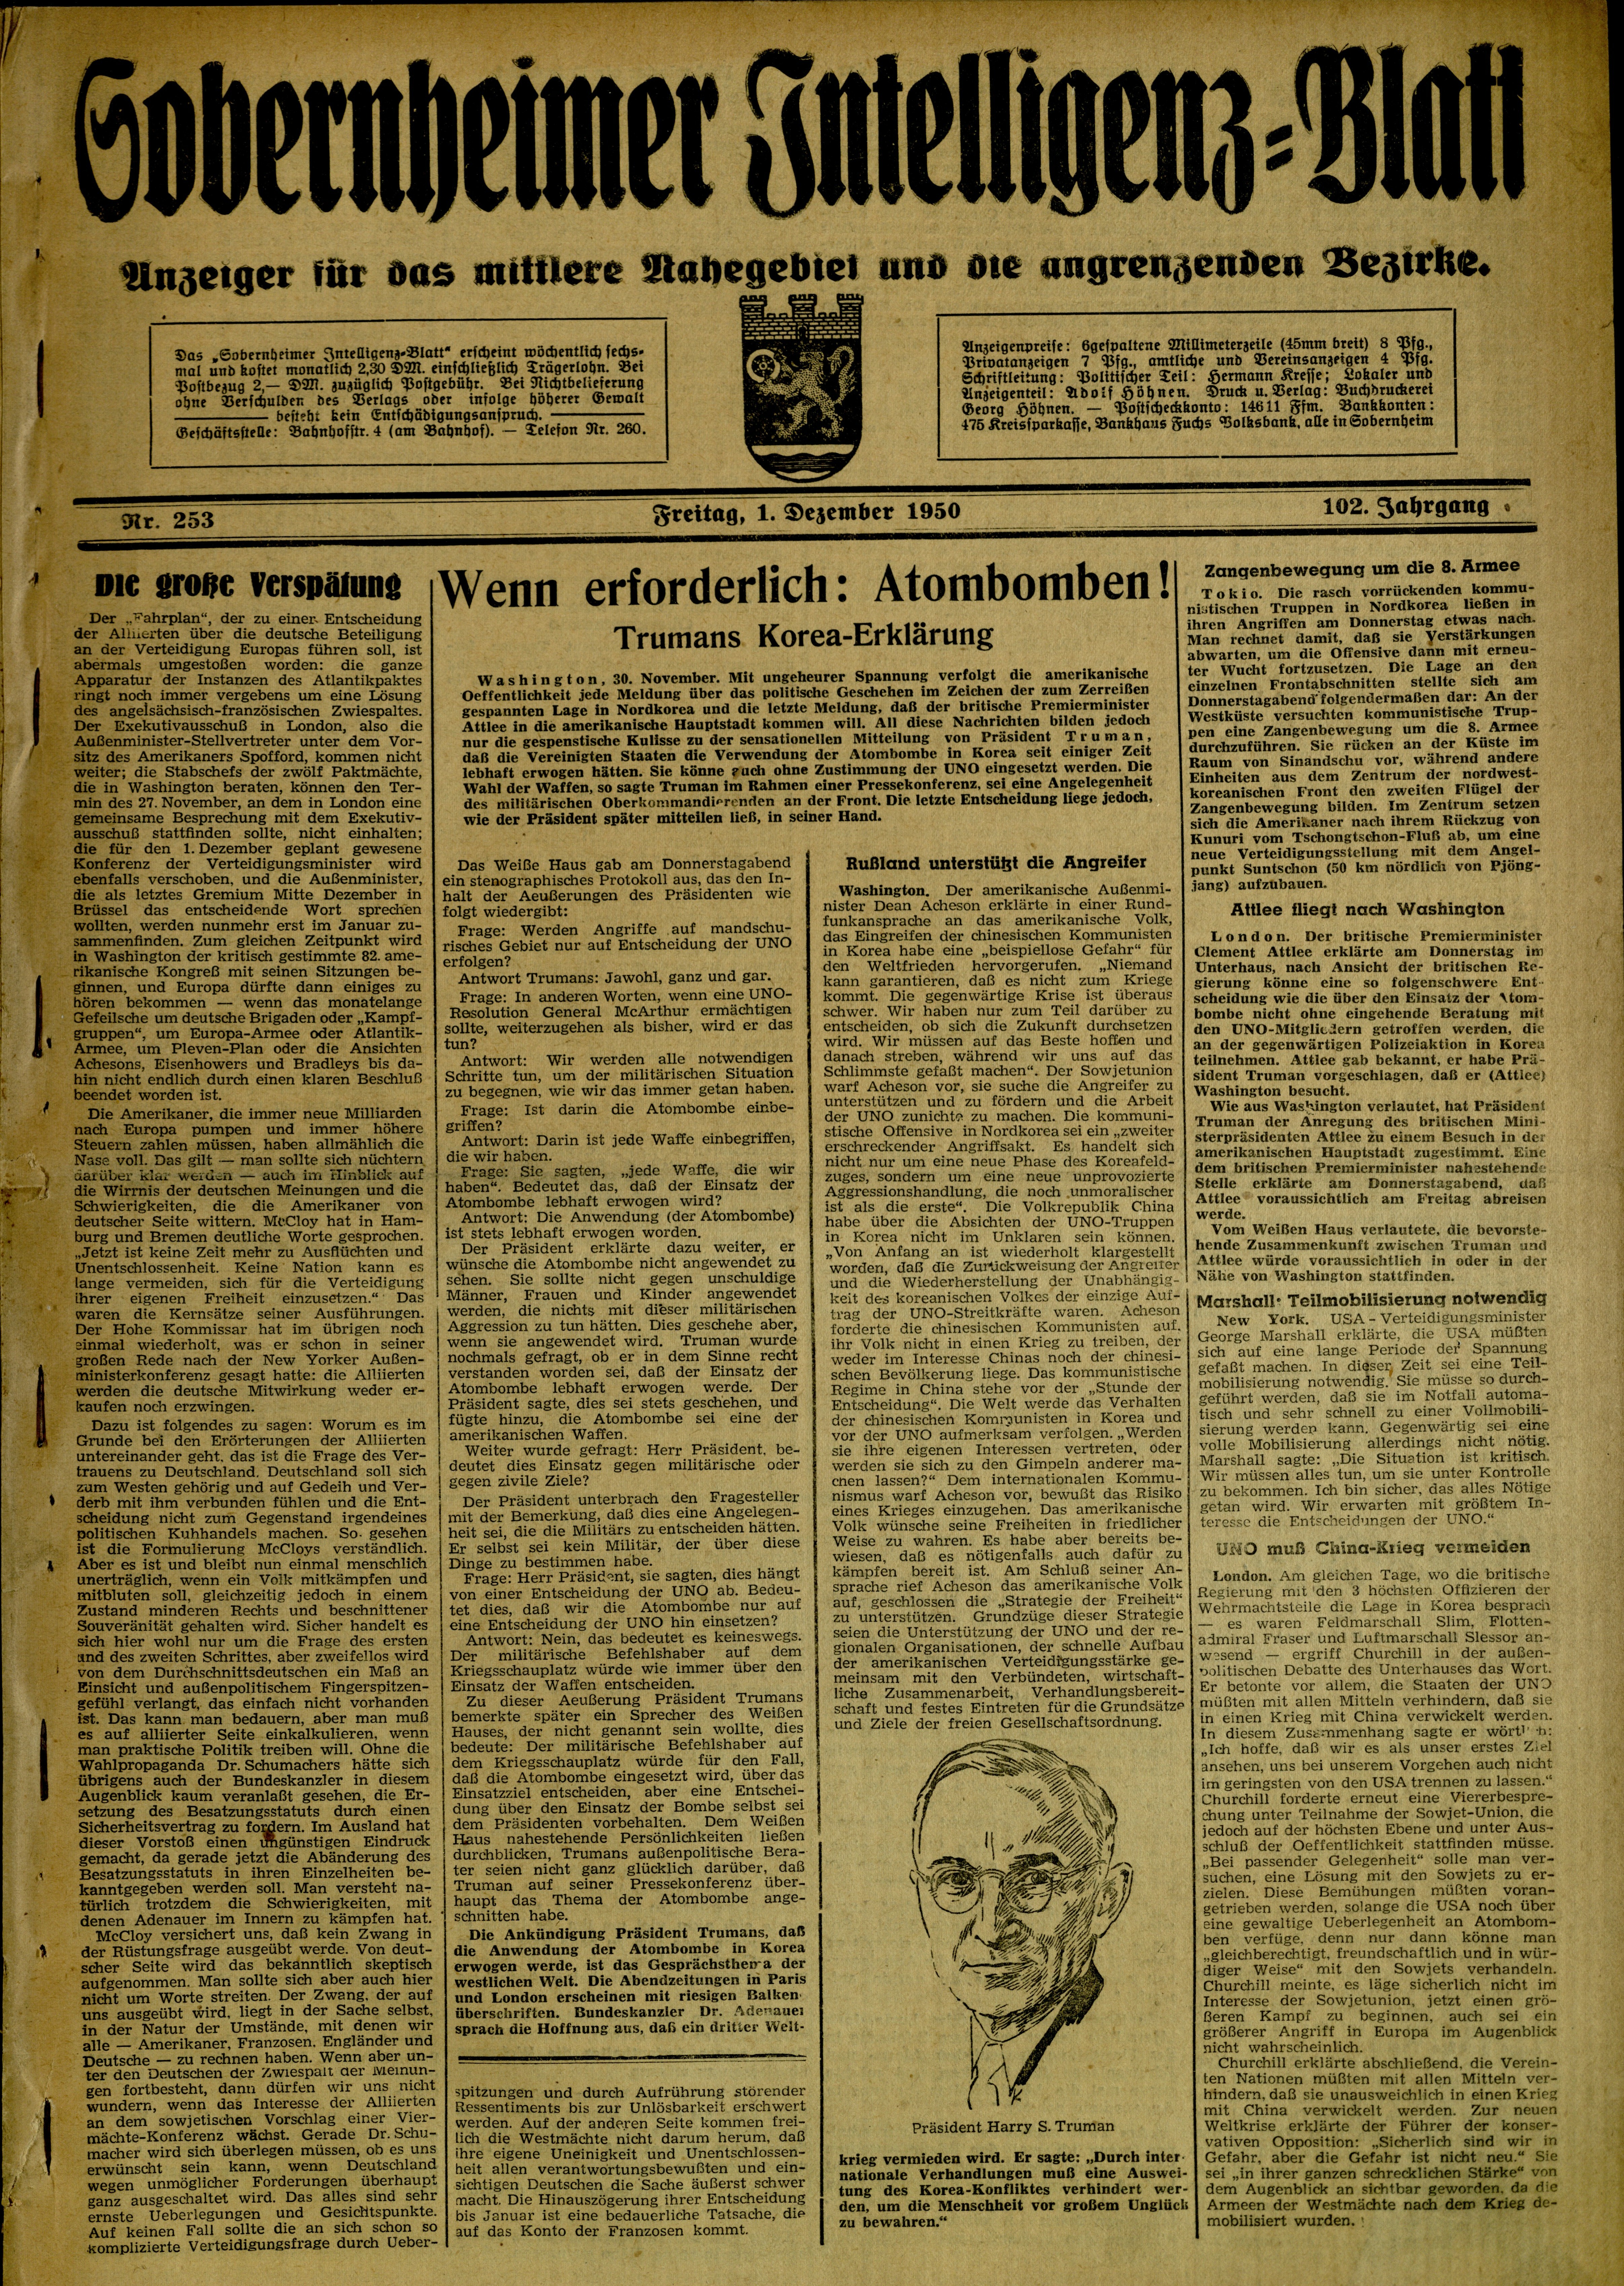 Zeitung: Sobernheimer Intelligenzblatt; August 1950, Jg. 82 Nr. 150 (Heimatmuseum Bad Sobernheim CC BY-NC-SA)